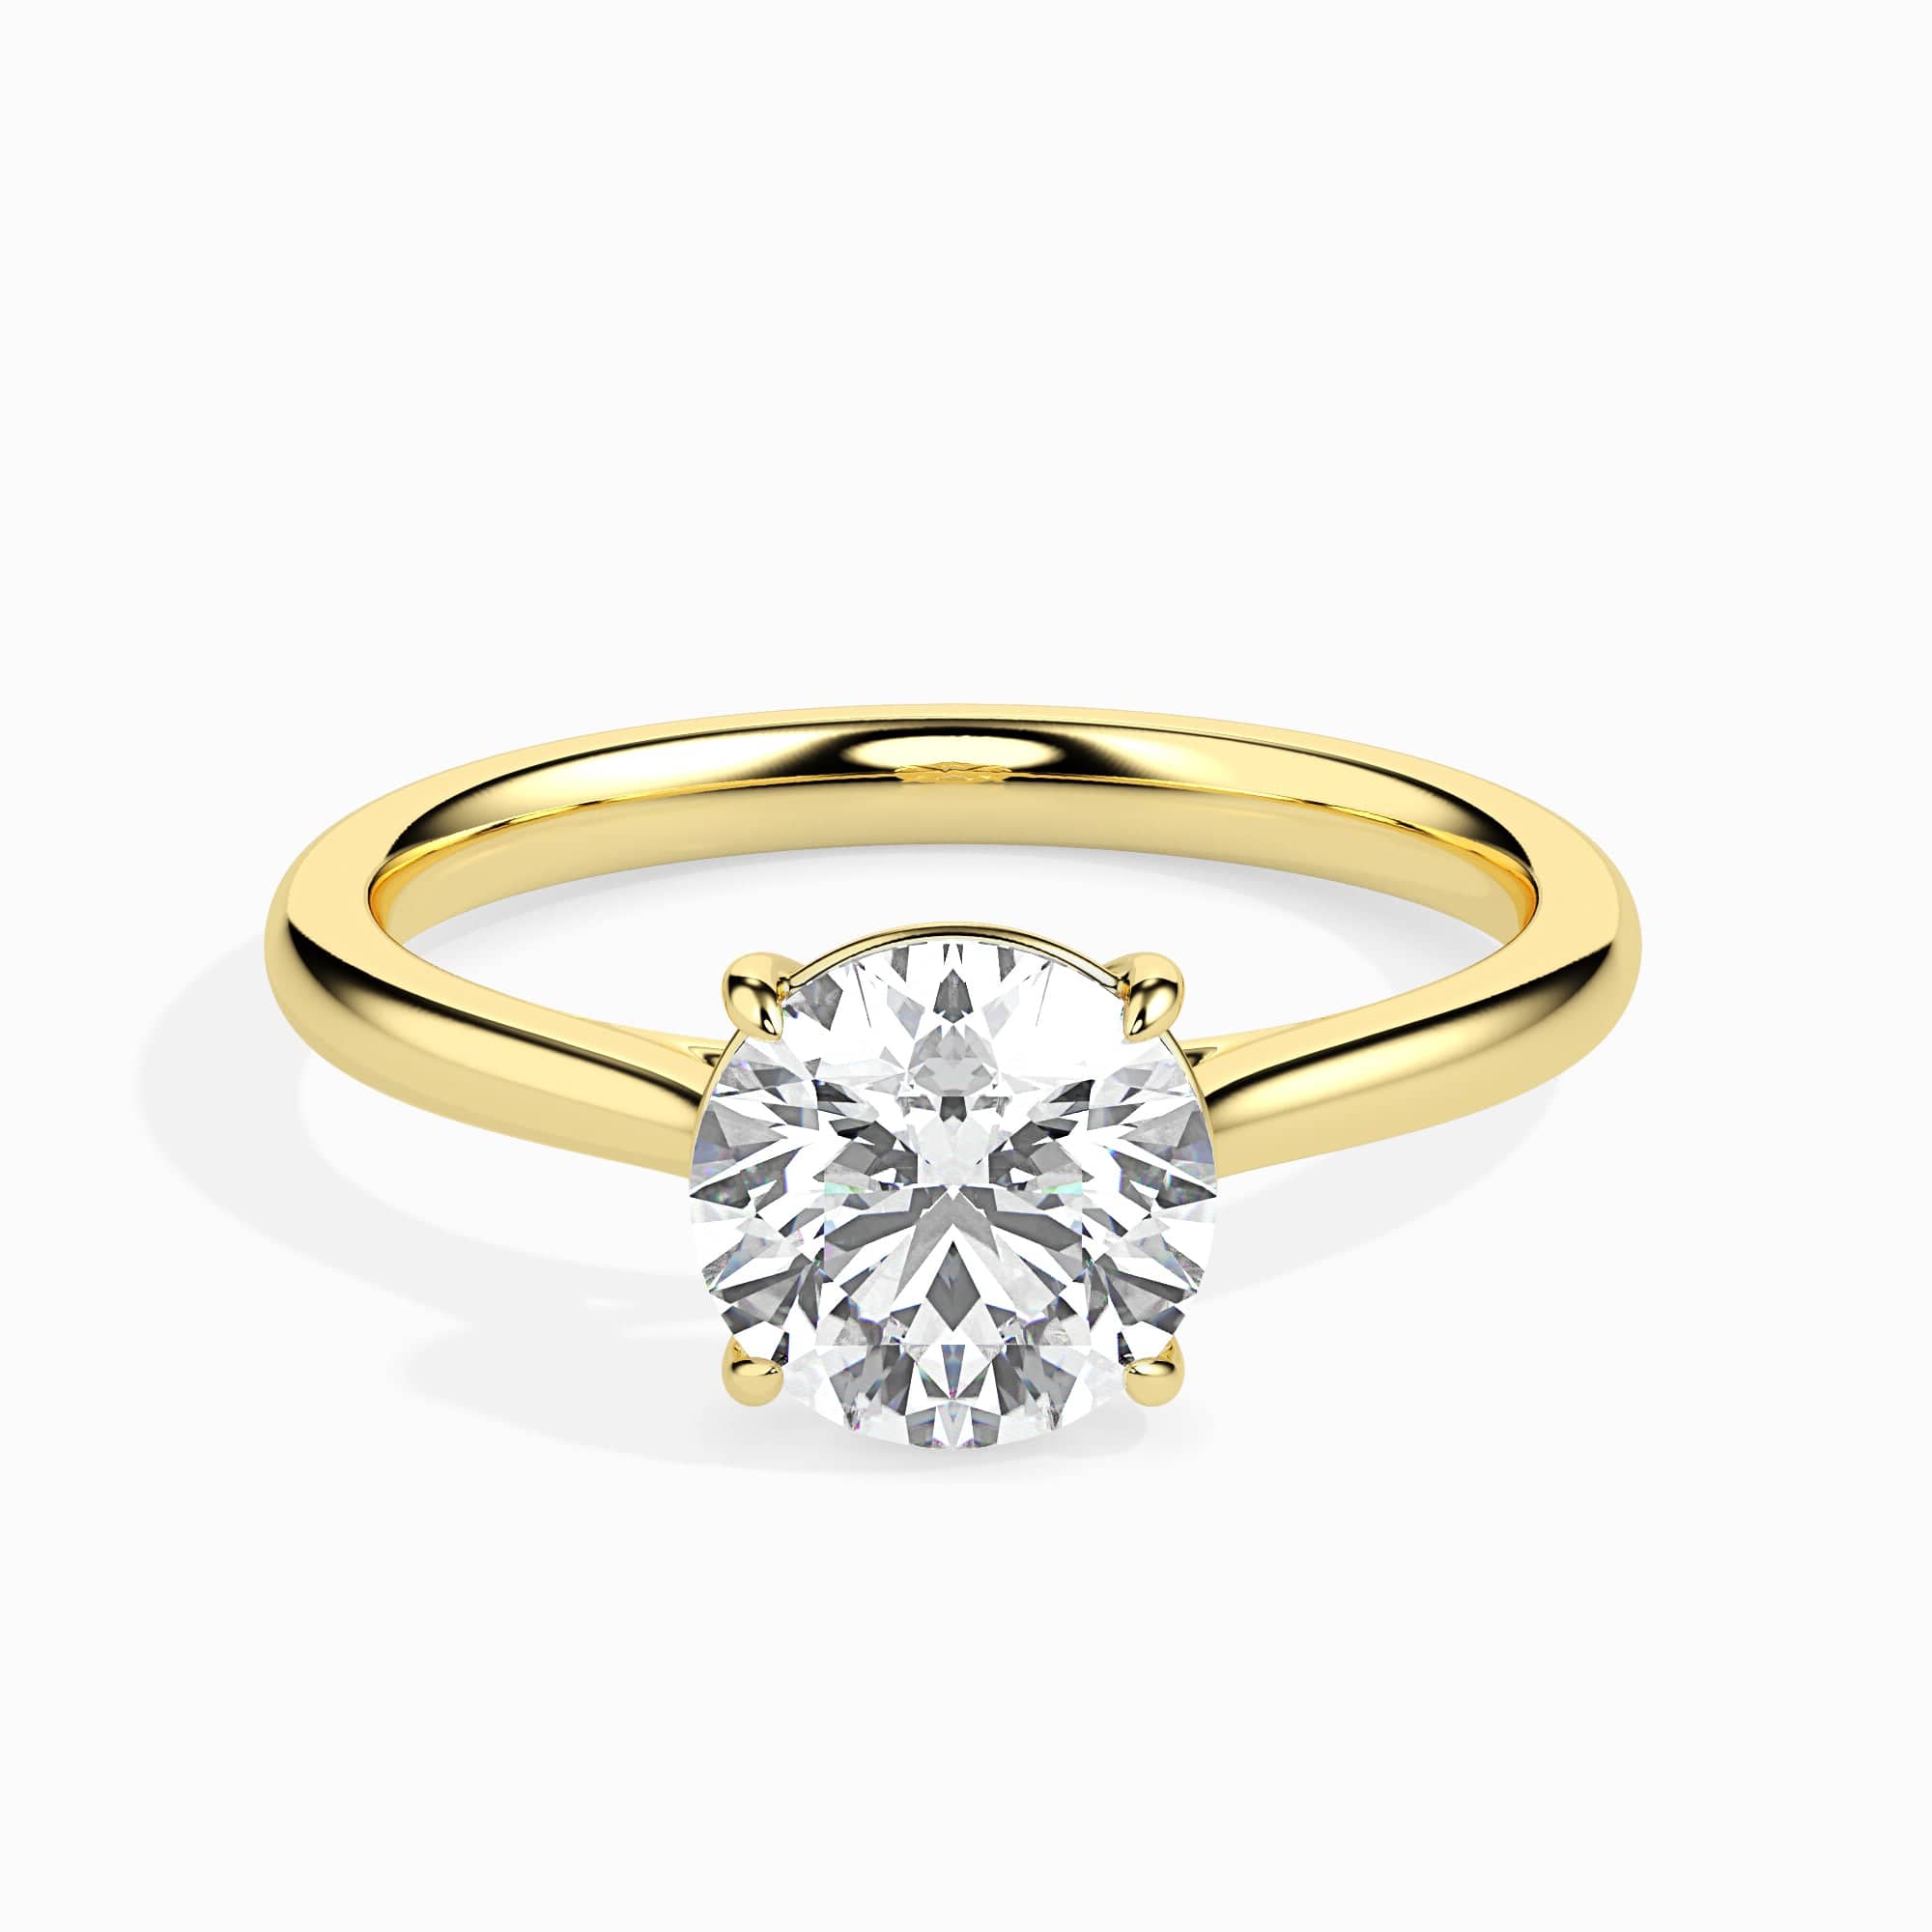 Small 14k Gold and Diamond Heart Ring | Mia Gemma